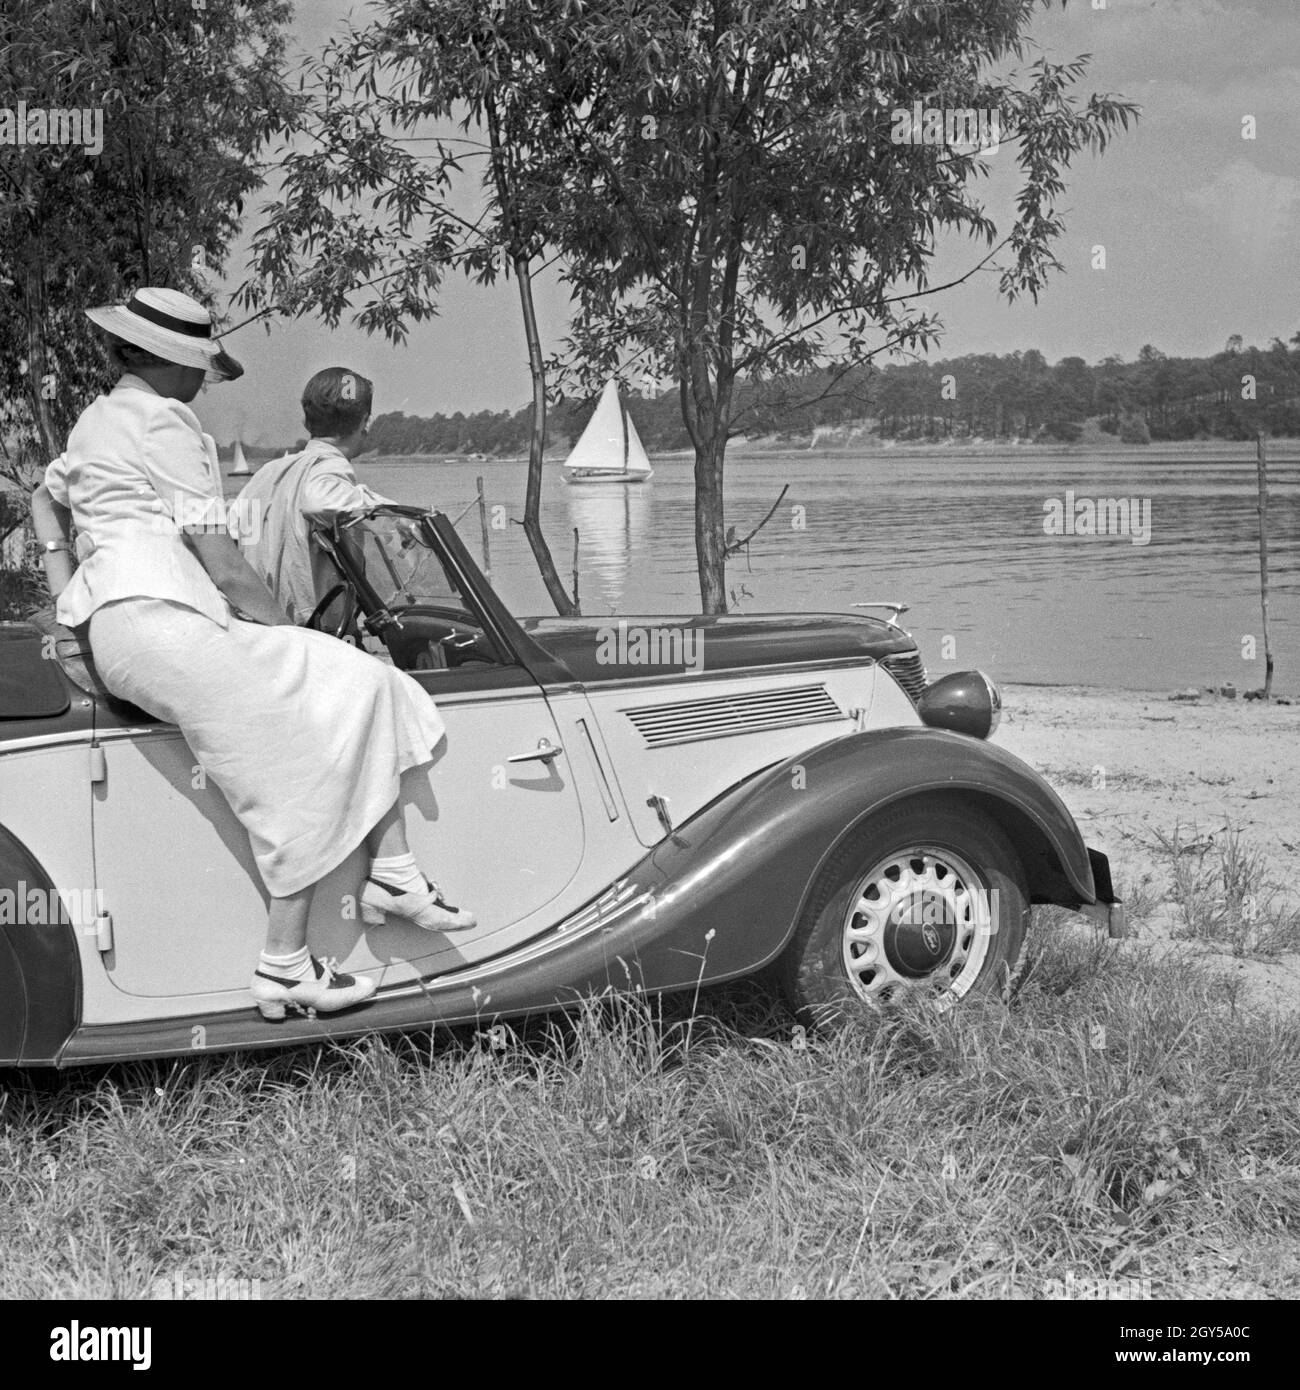 Werbefoto für den Personenkraftwagen Ford Eifel Mit einem Paar über einen Fluß schauend, Deutschland 1935. Fotografia commerciale per le automobili Ford Eifel con coppia guardare su un fiume, Germania 1935. Foto Stock